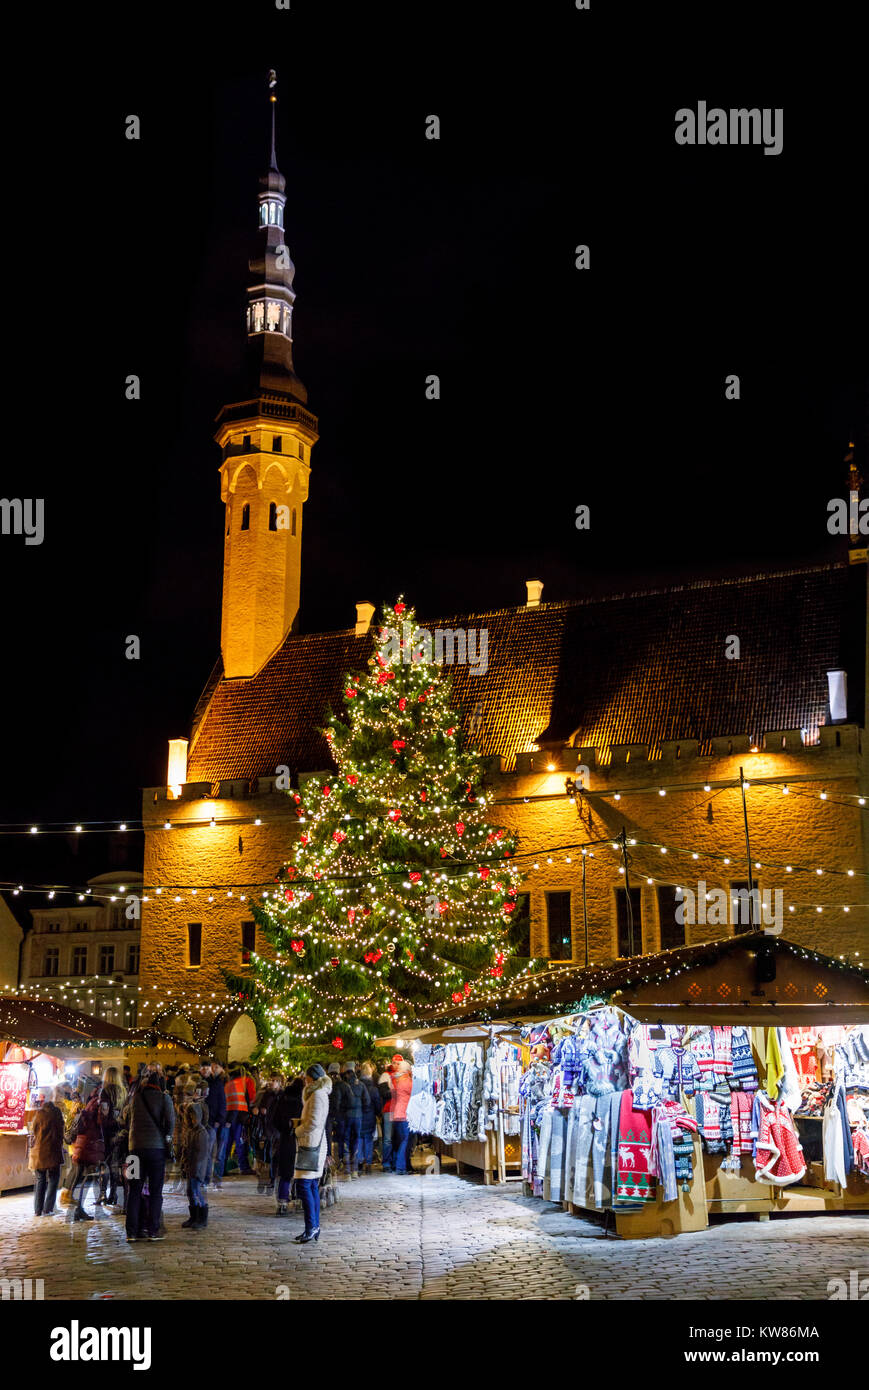 TALLINN, Estonia - 24 dicembre 2017: turisti al mercatino di natale nella città vecchia di Tallinn in Estonia il 24 dicembre, 2017 Foto Stock